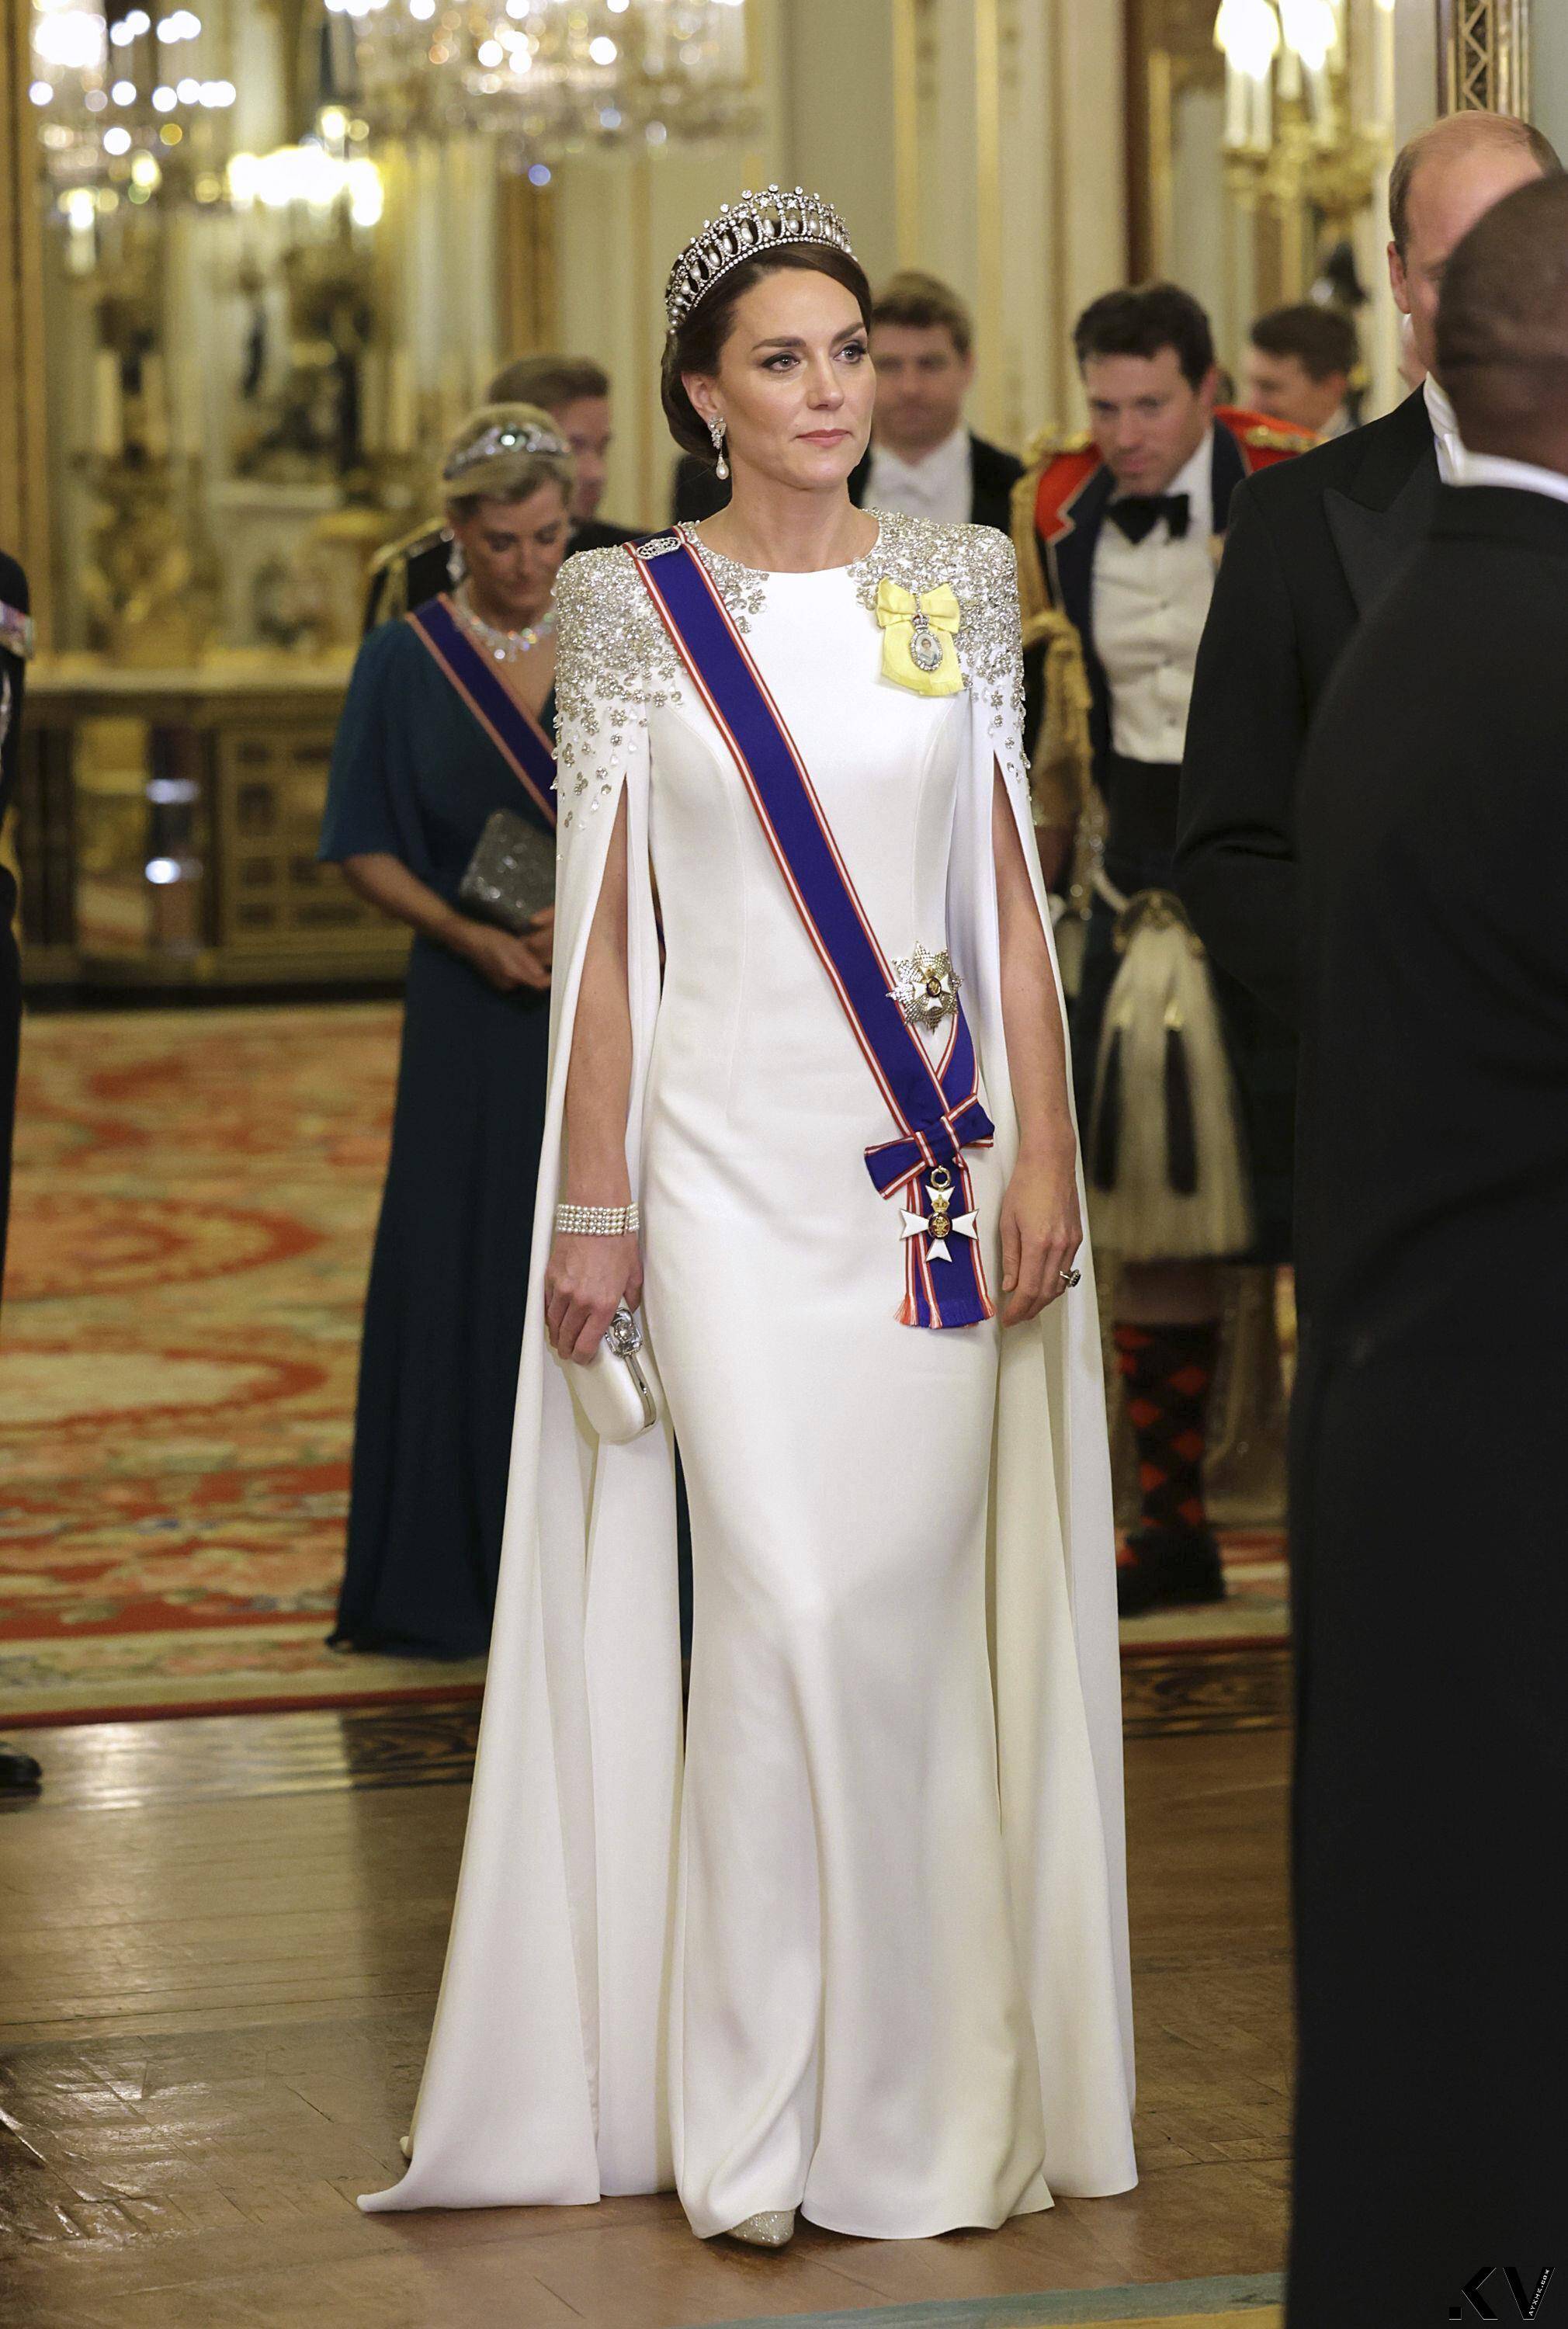 凯特王妃斗篷装美到网友喊“王后”　黛妃最爱冠冕加持秀女神气势 时尚穿搭 图3张